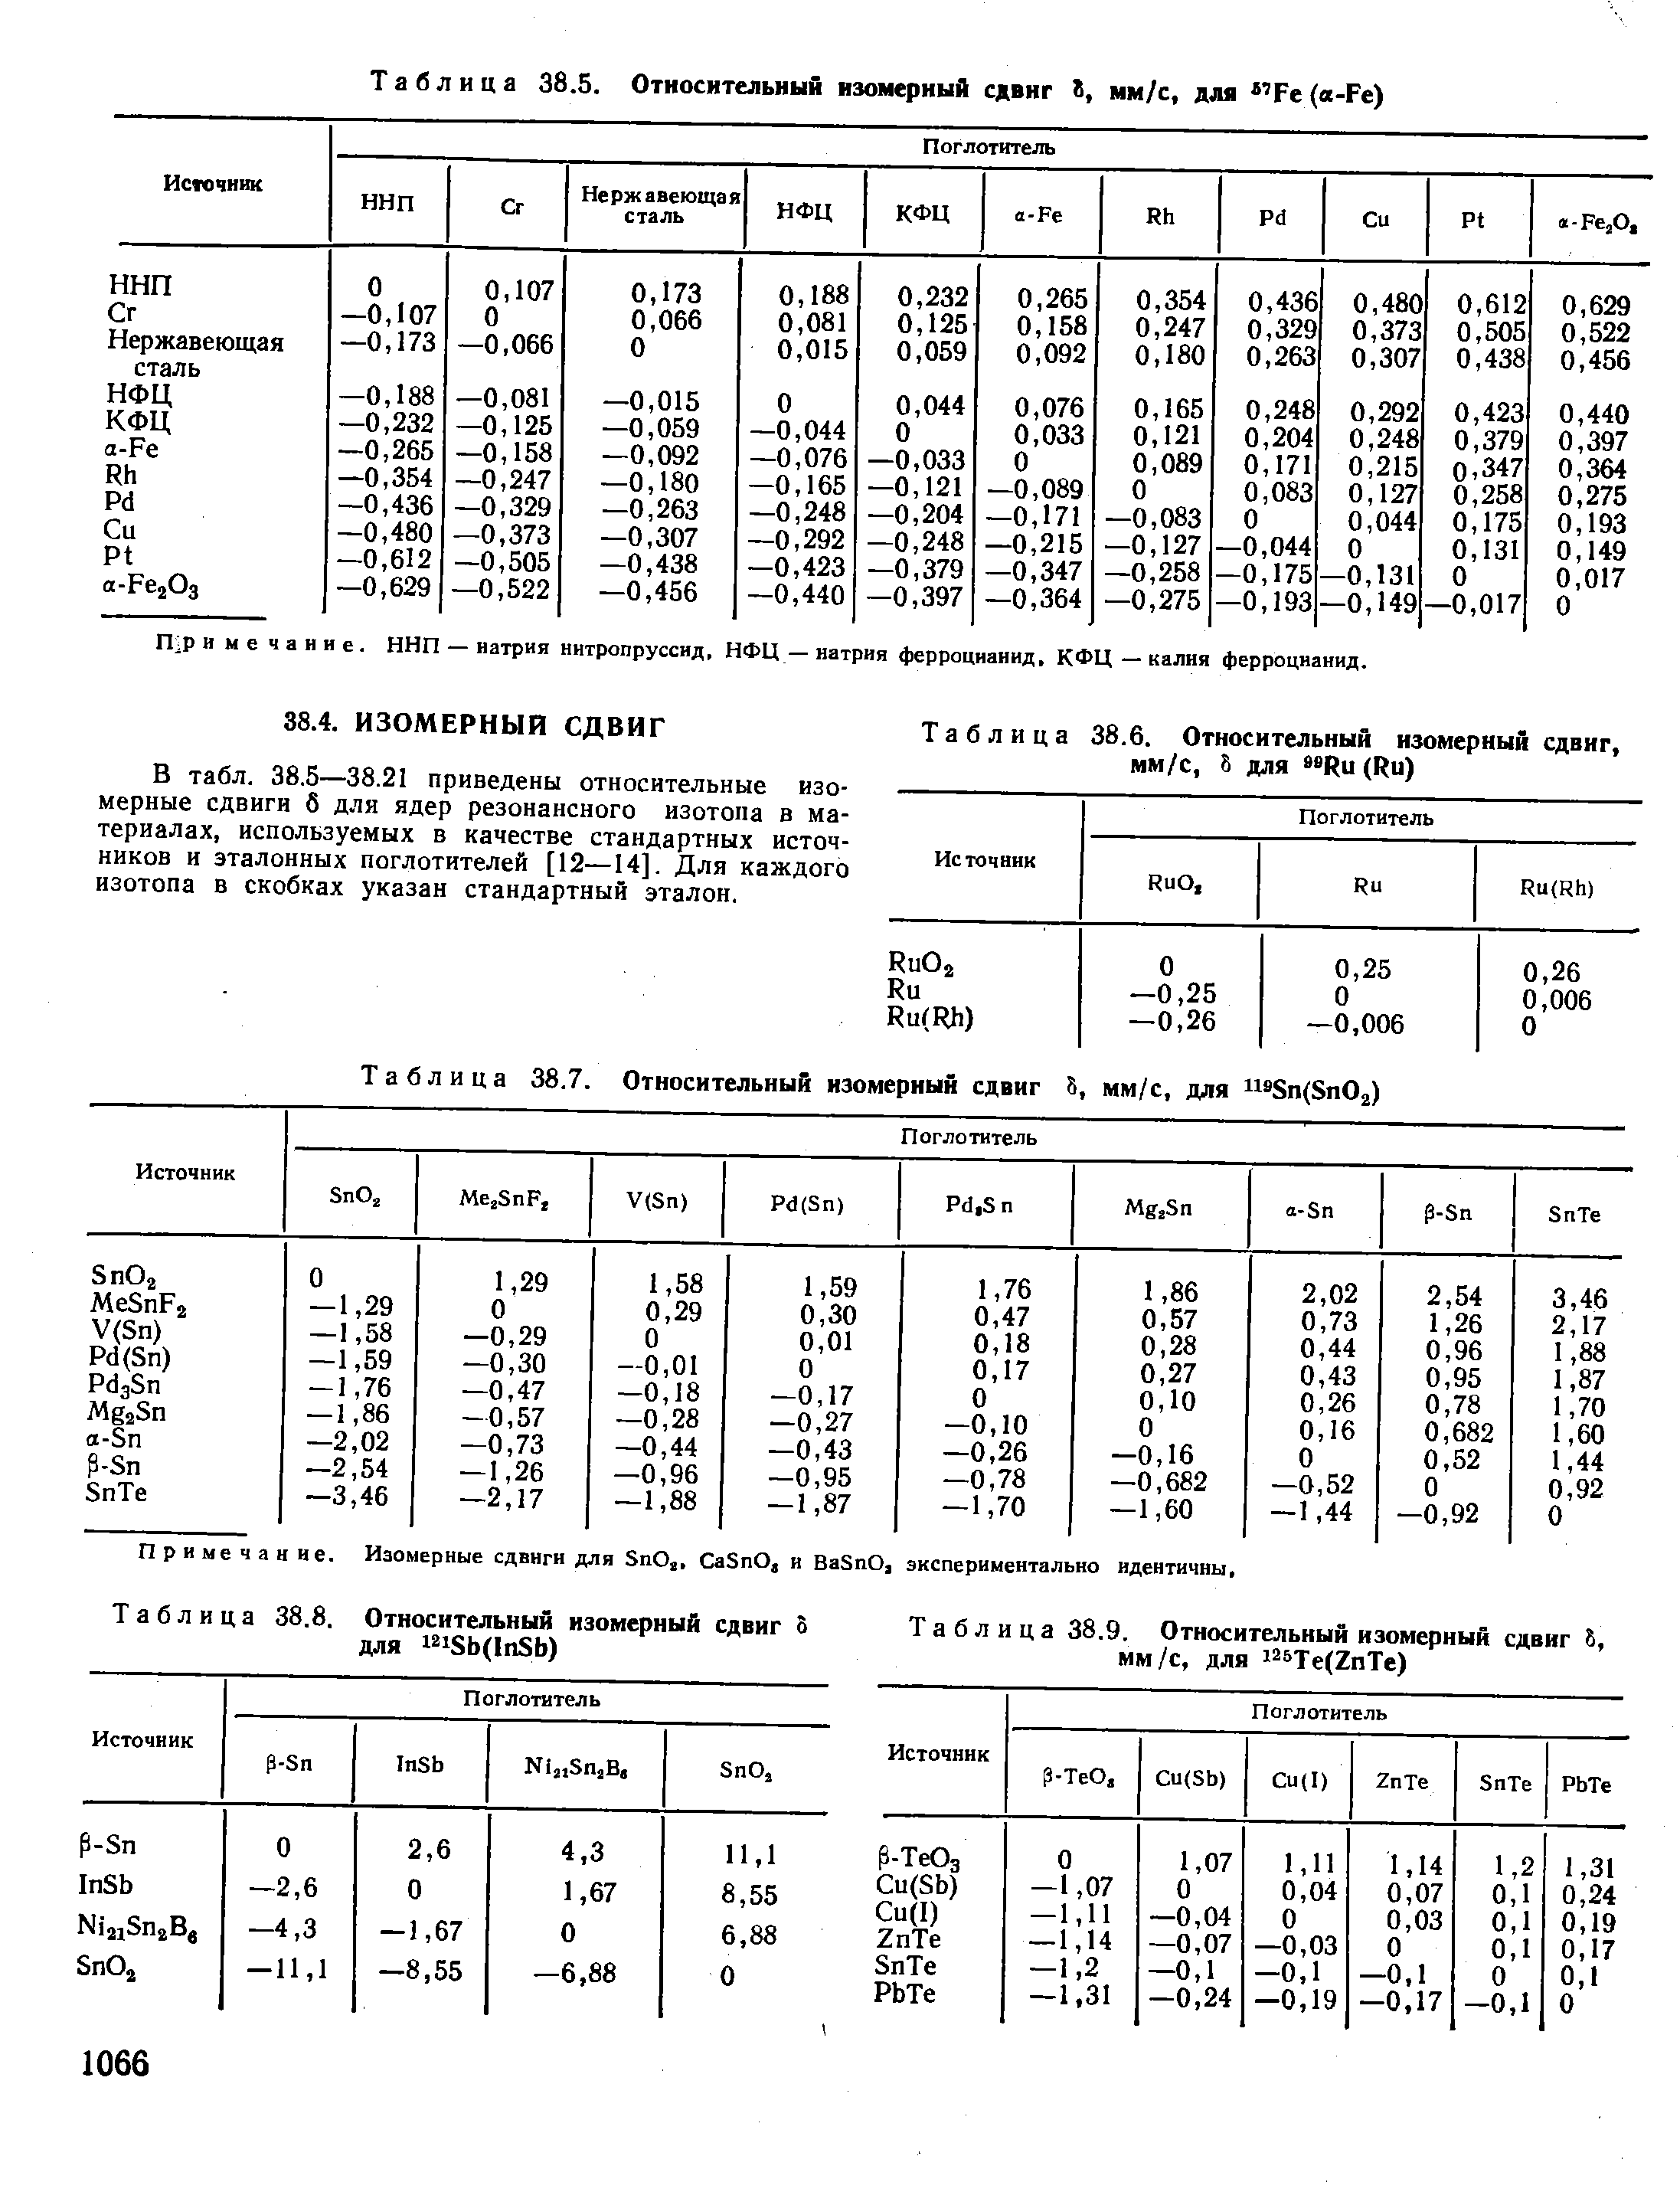 Таблица 38.6. Относительный изомерный сдвиг, мм/с, 8 для Ru (Ru)
